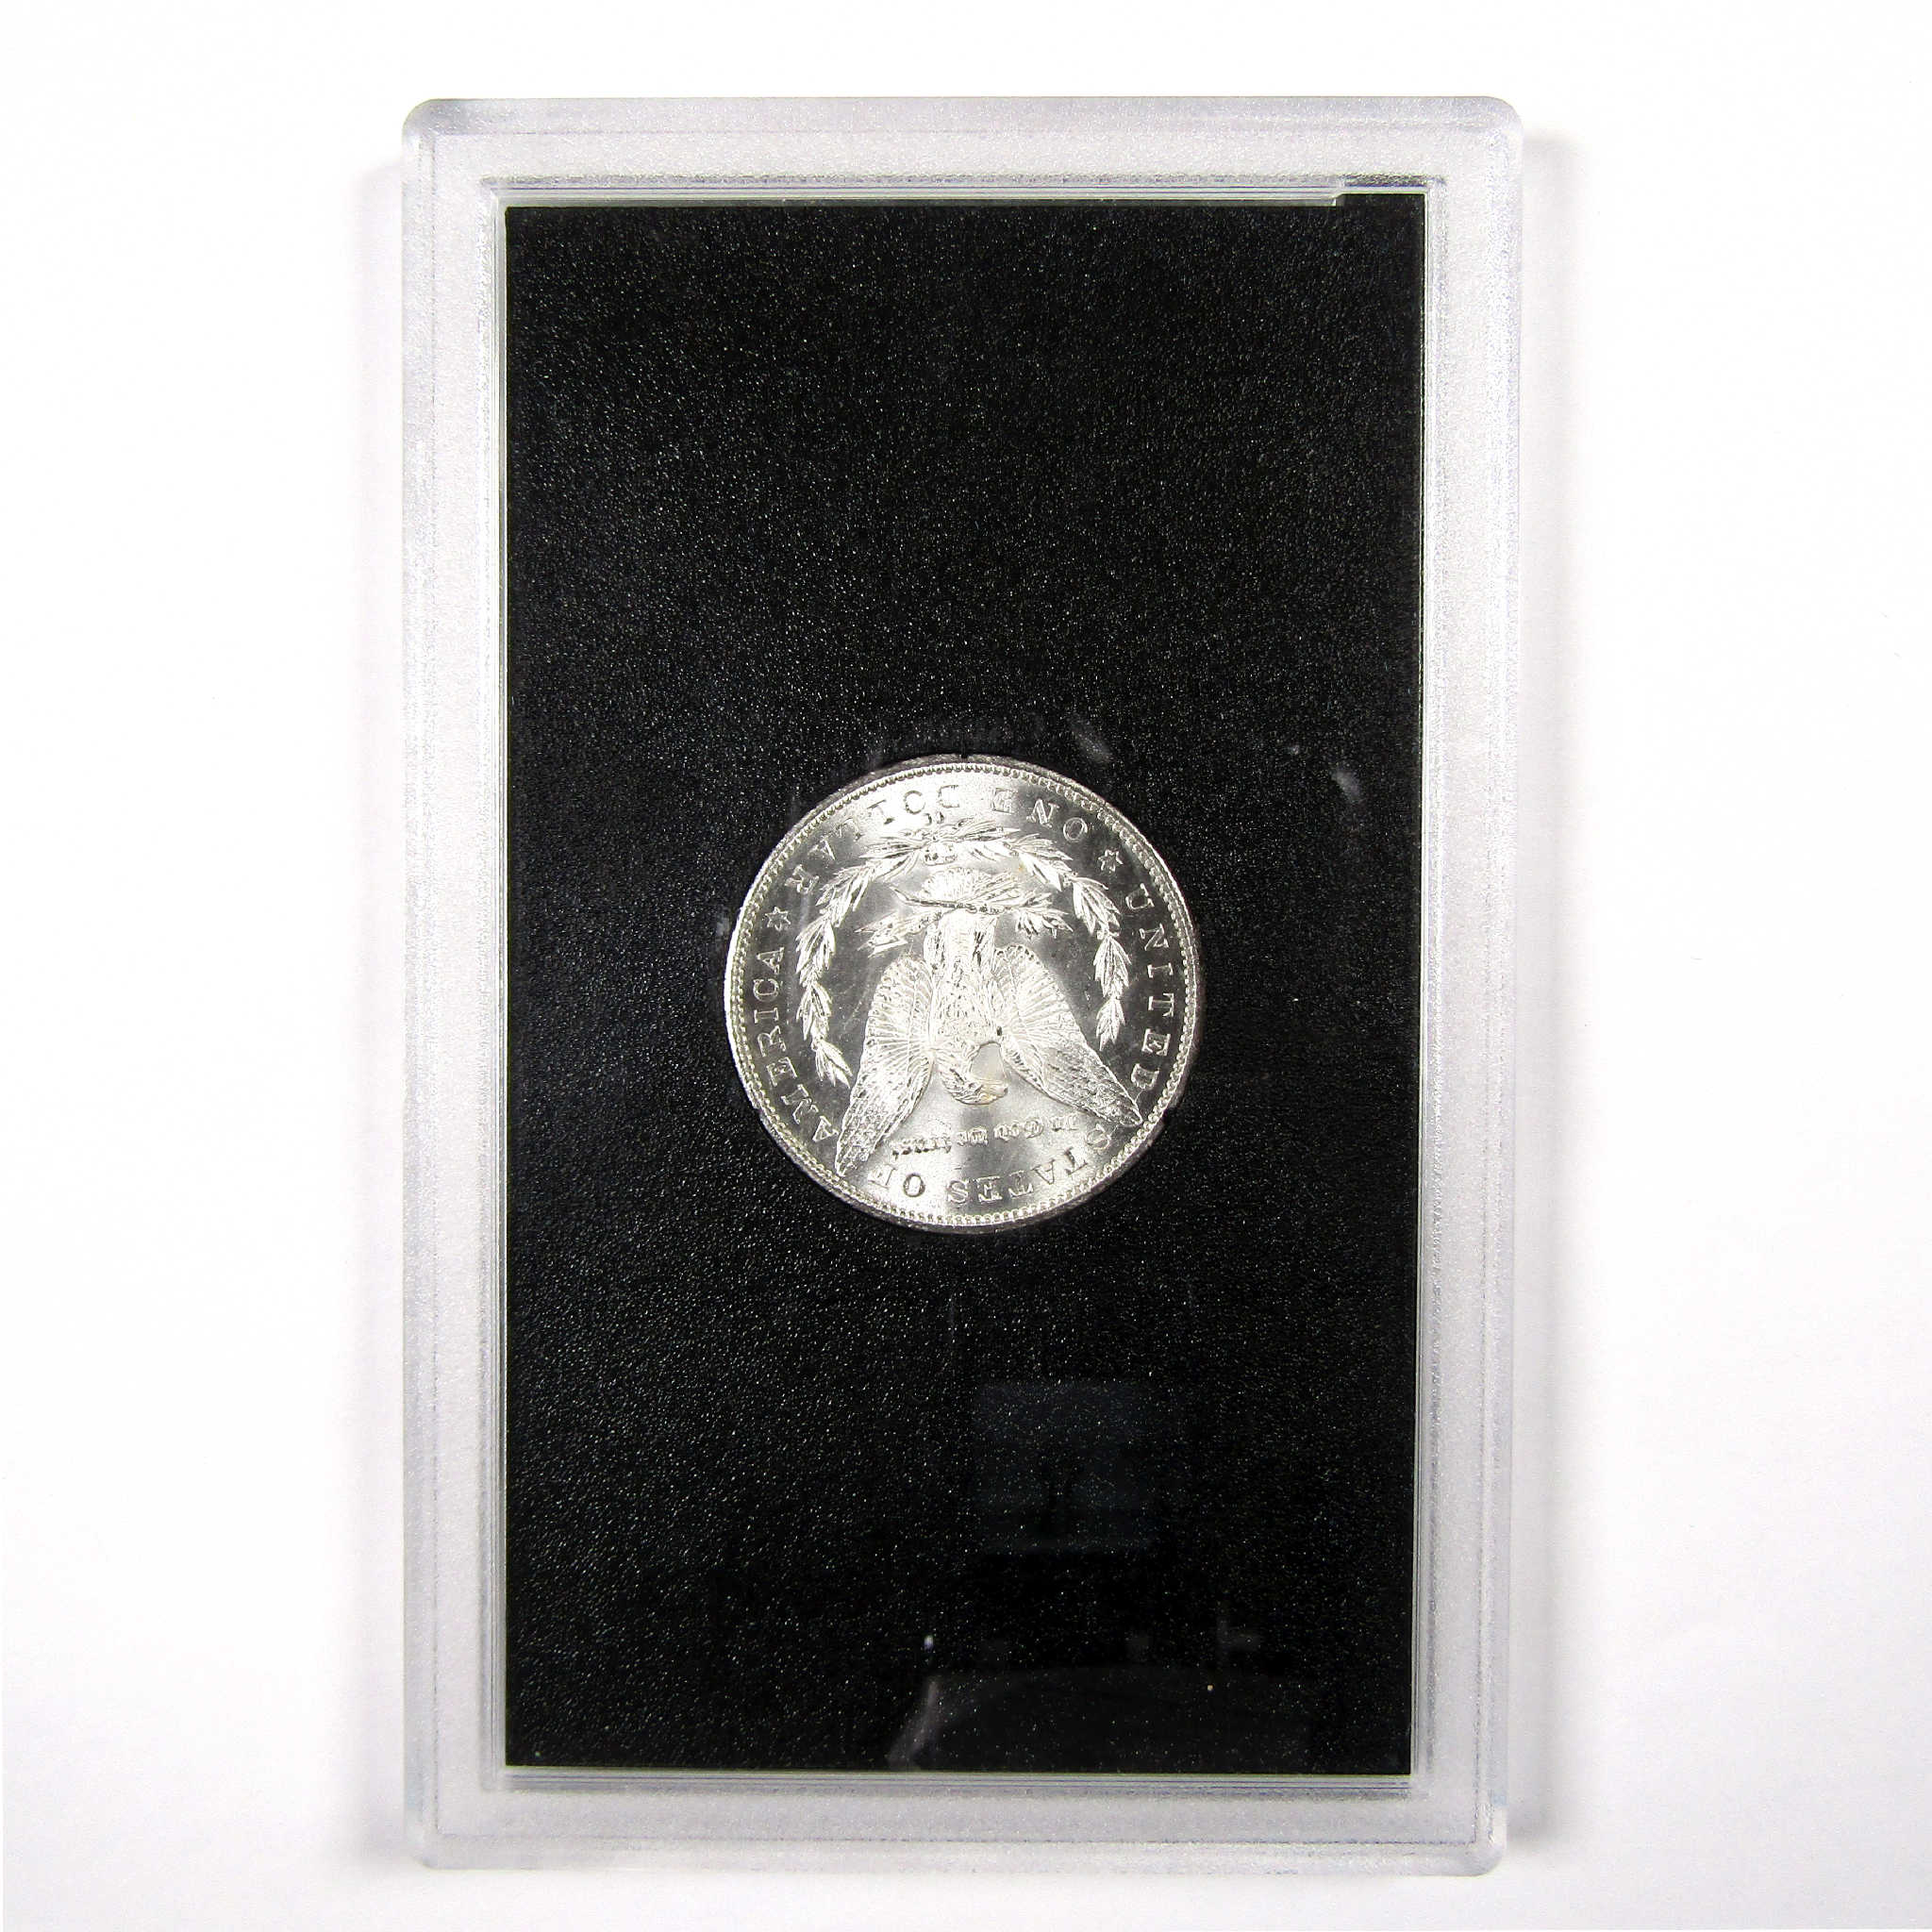 1884 CC GSA Morgan Dollar BU Uncirculated Silver $1 Coin SKU:I11494 - Morgan coin - Morgan silver dollar - Morgan silver dollar for sale - Profile Coins &amp; Collectibles